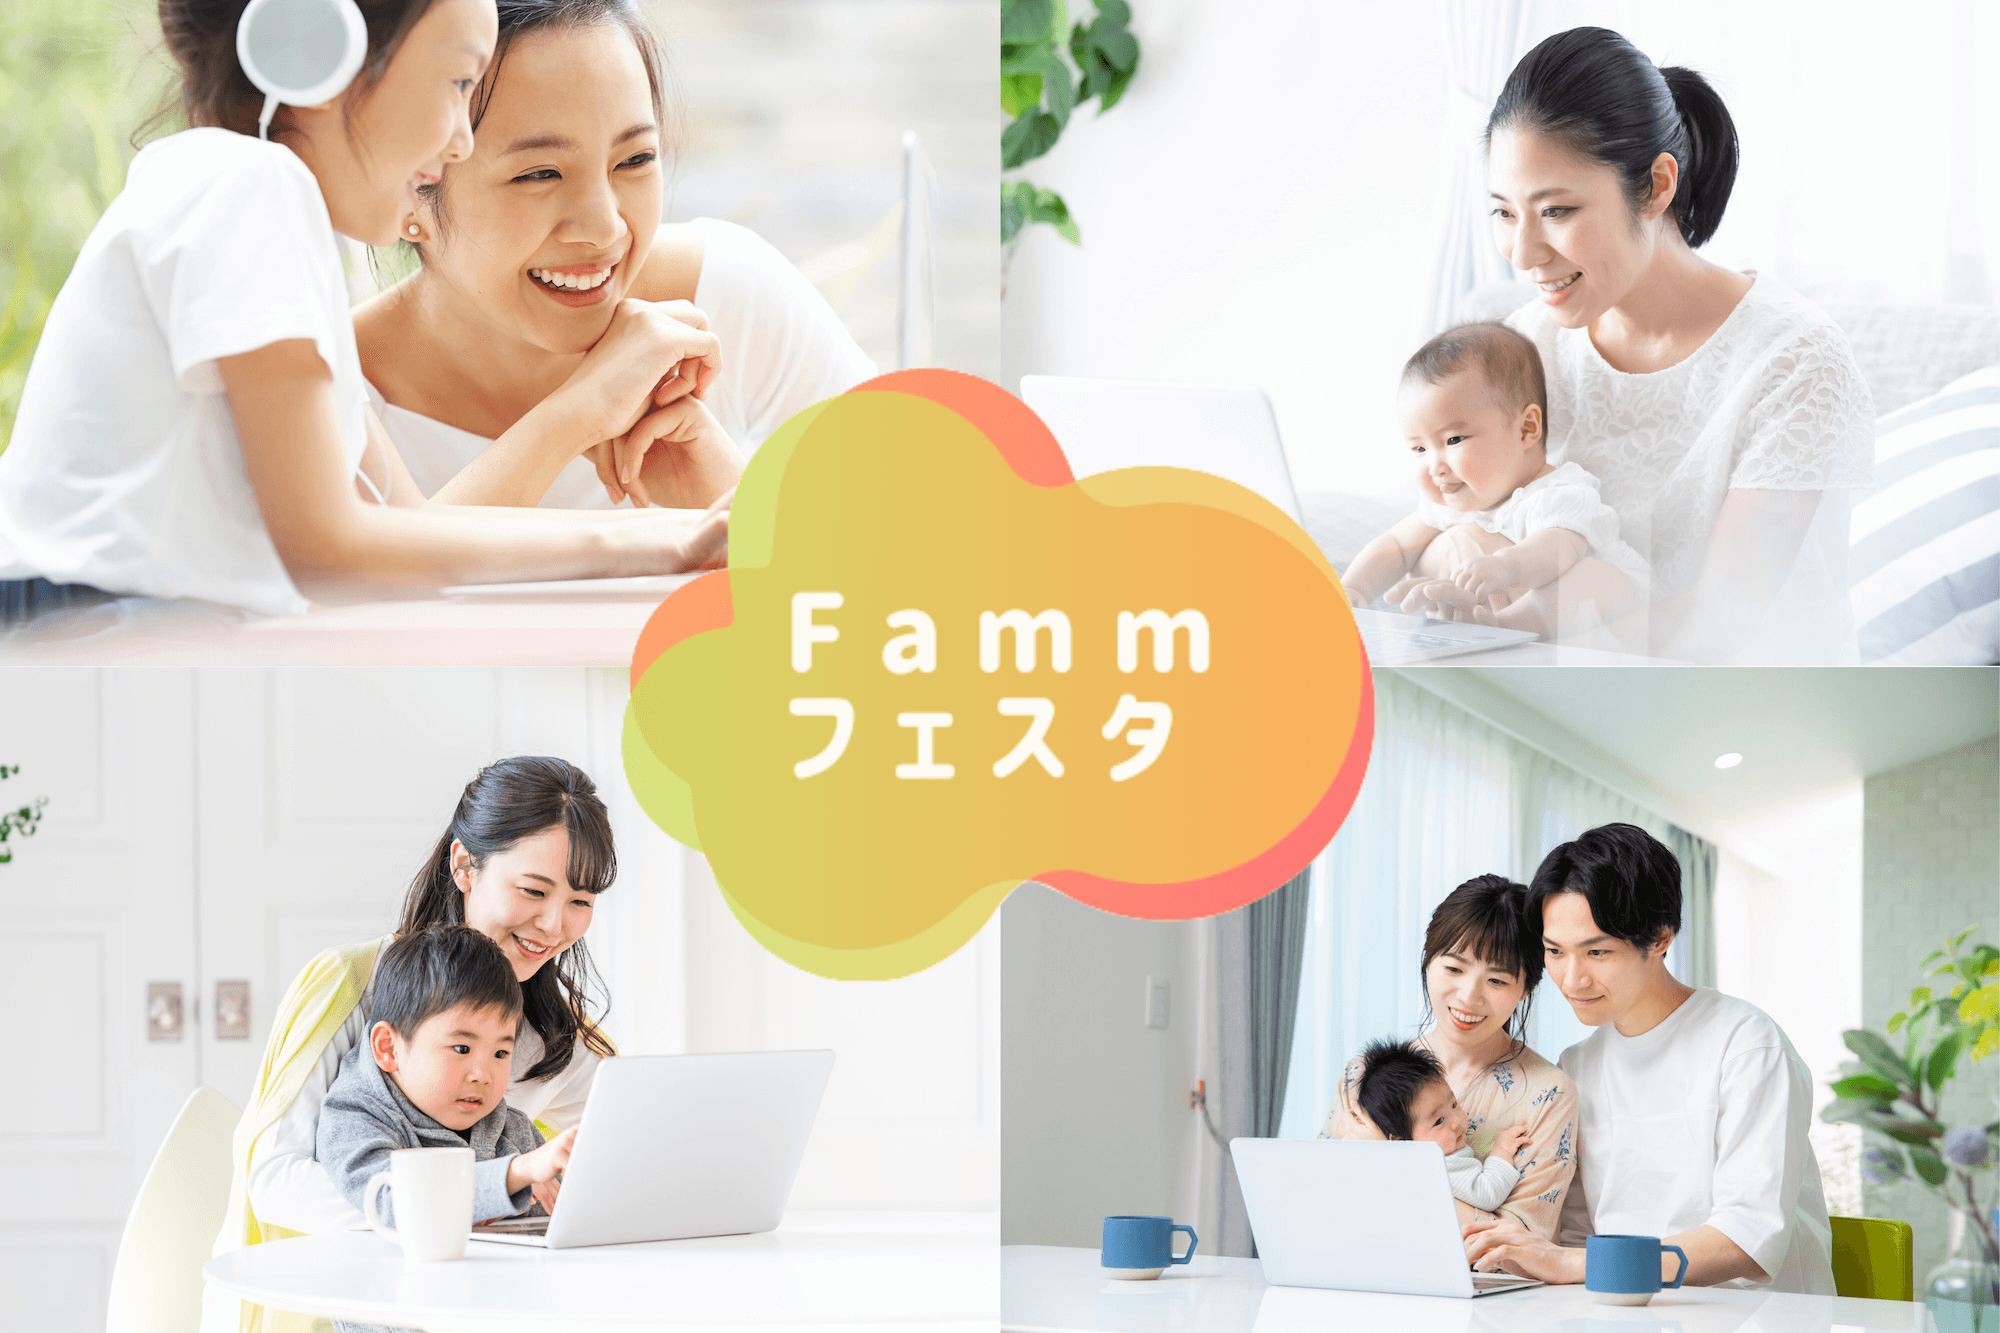 Famm無料オンラインイベント Fammフェスタ Famm ファム 家族アルバムや無料フォトカレンダー フォトアルバムなどで 子育てをもっと楽しく